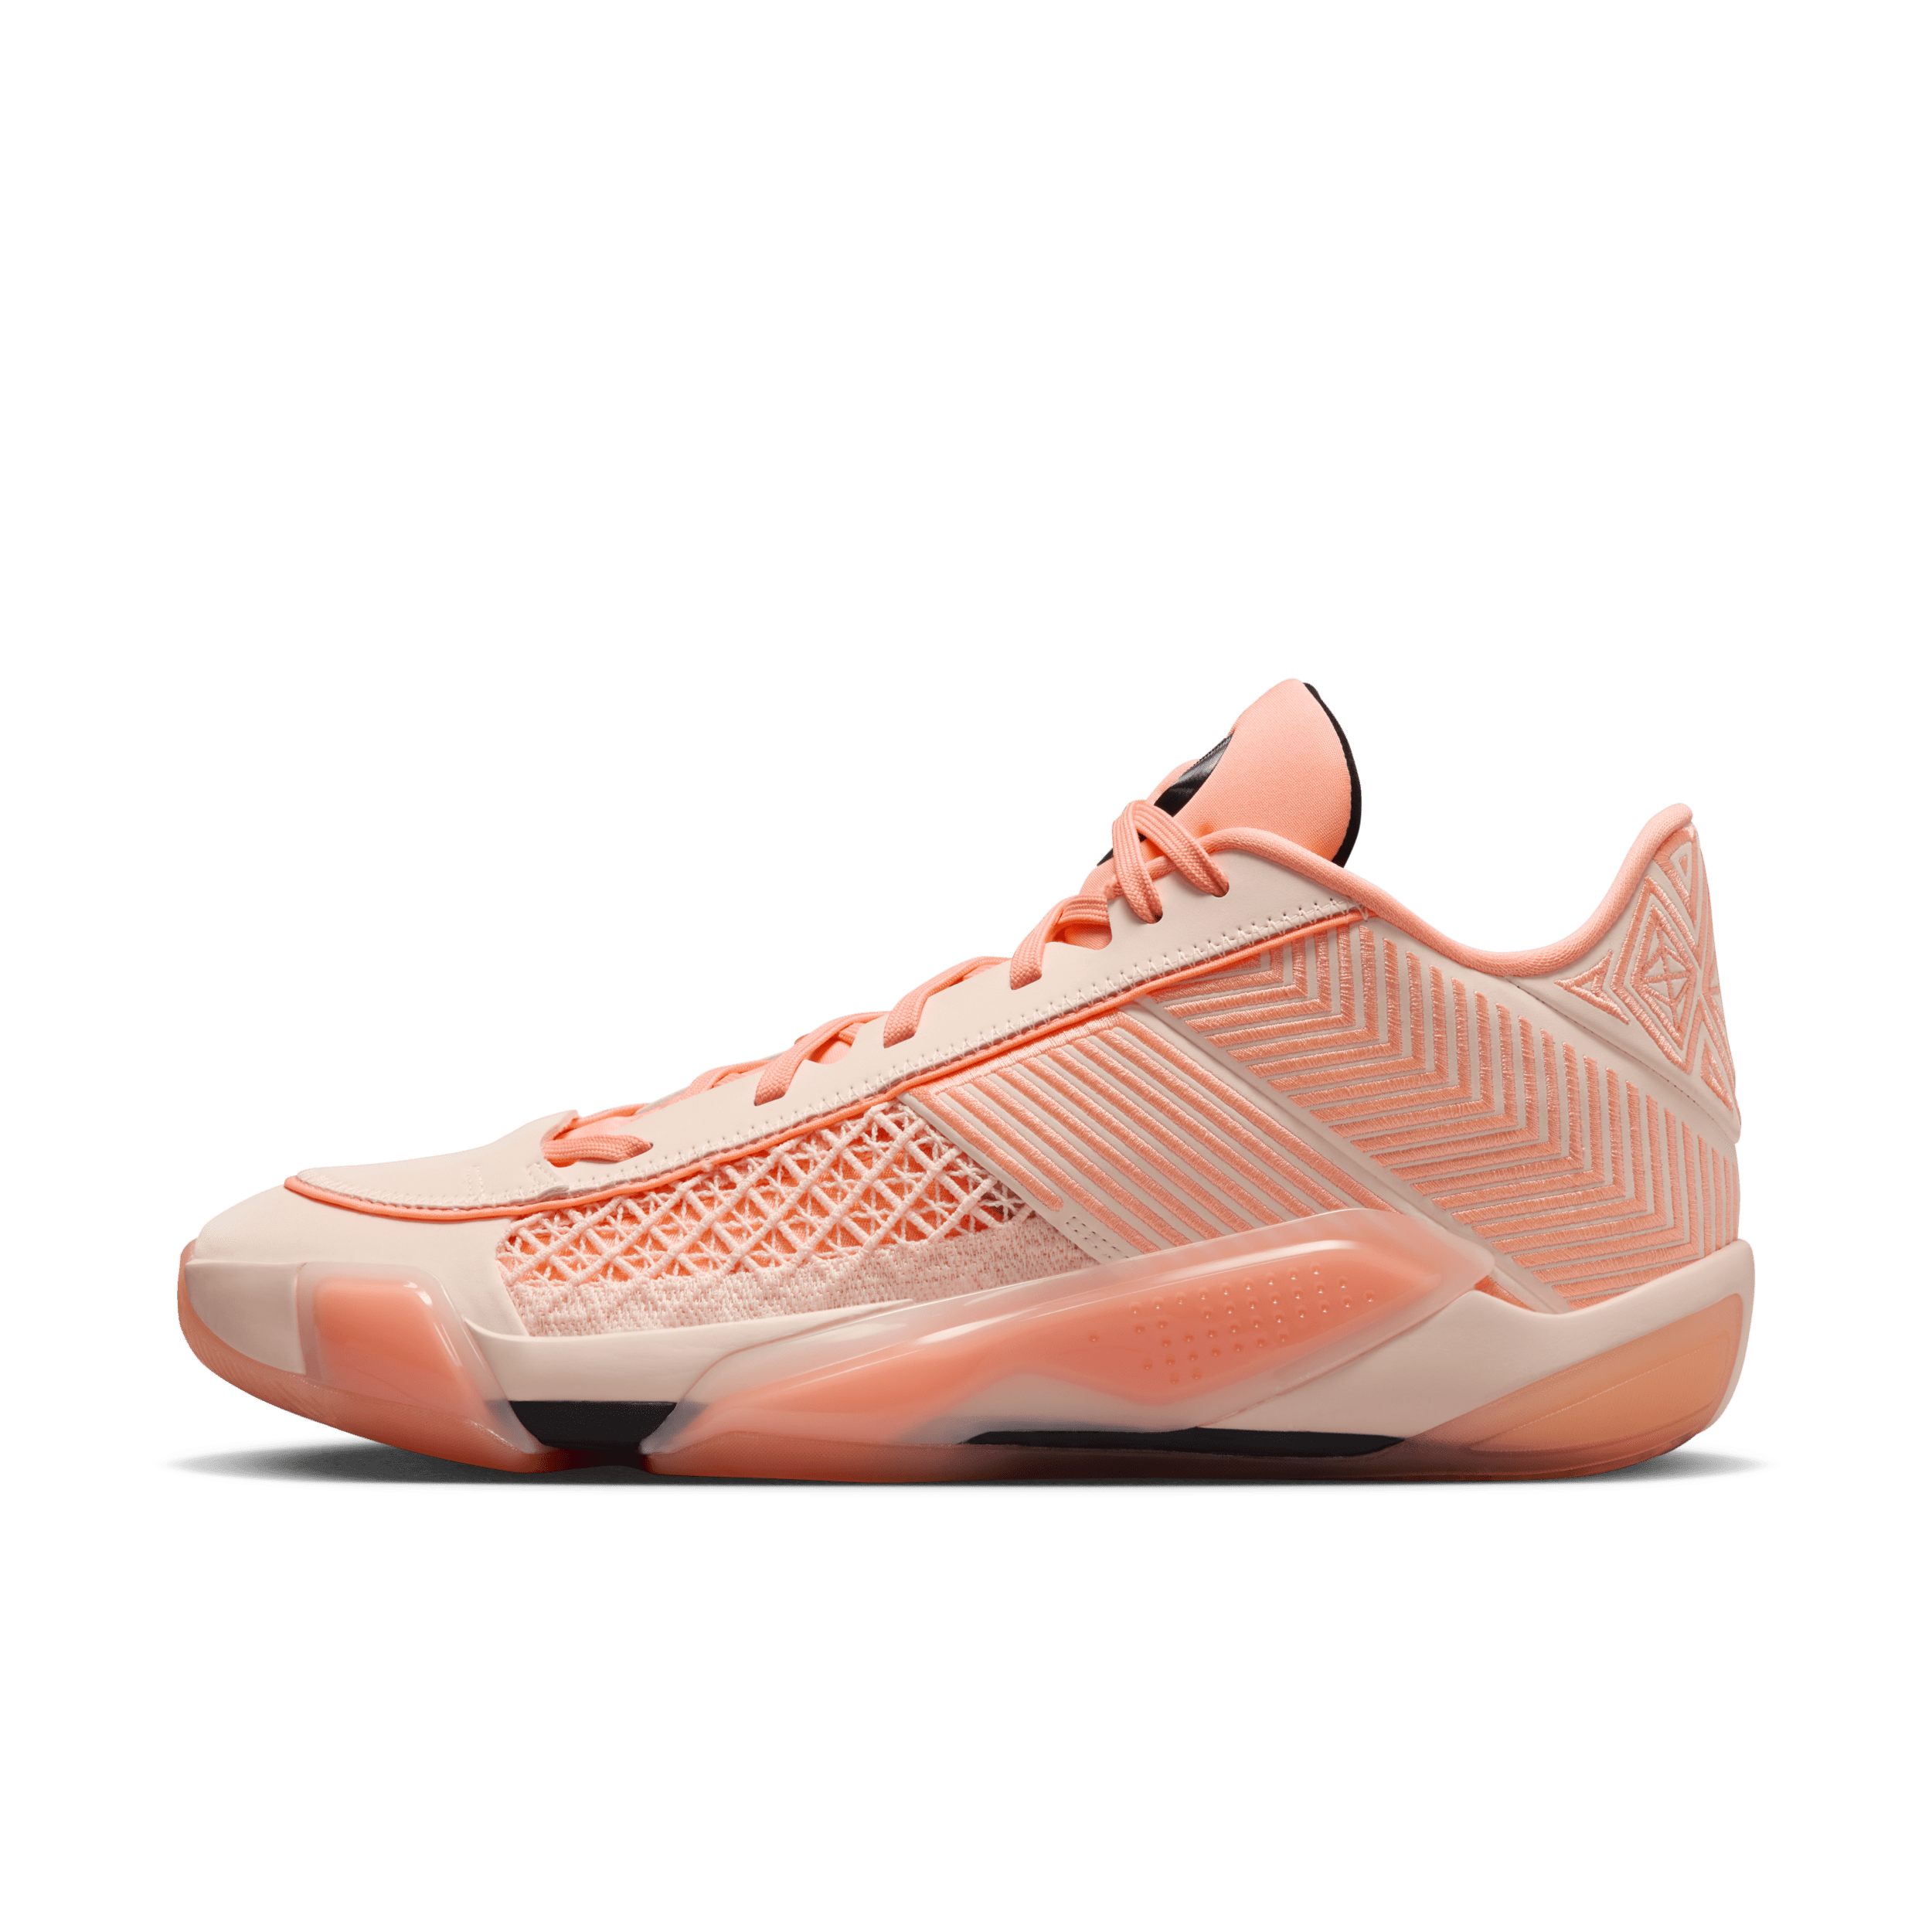 Air Jordan XXXVIII Low basketbalschoenen - Oranje